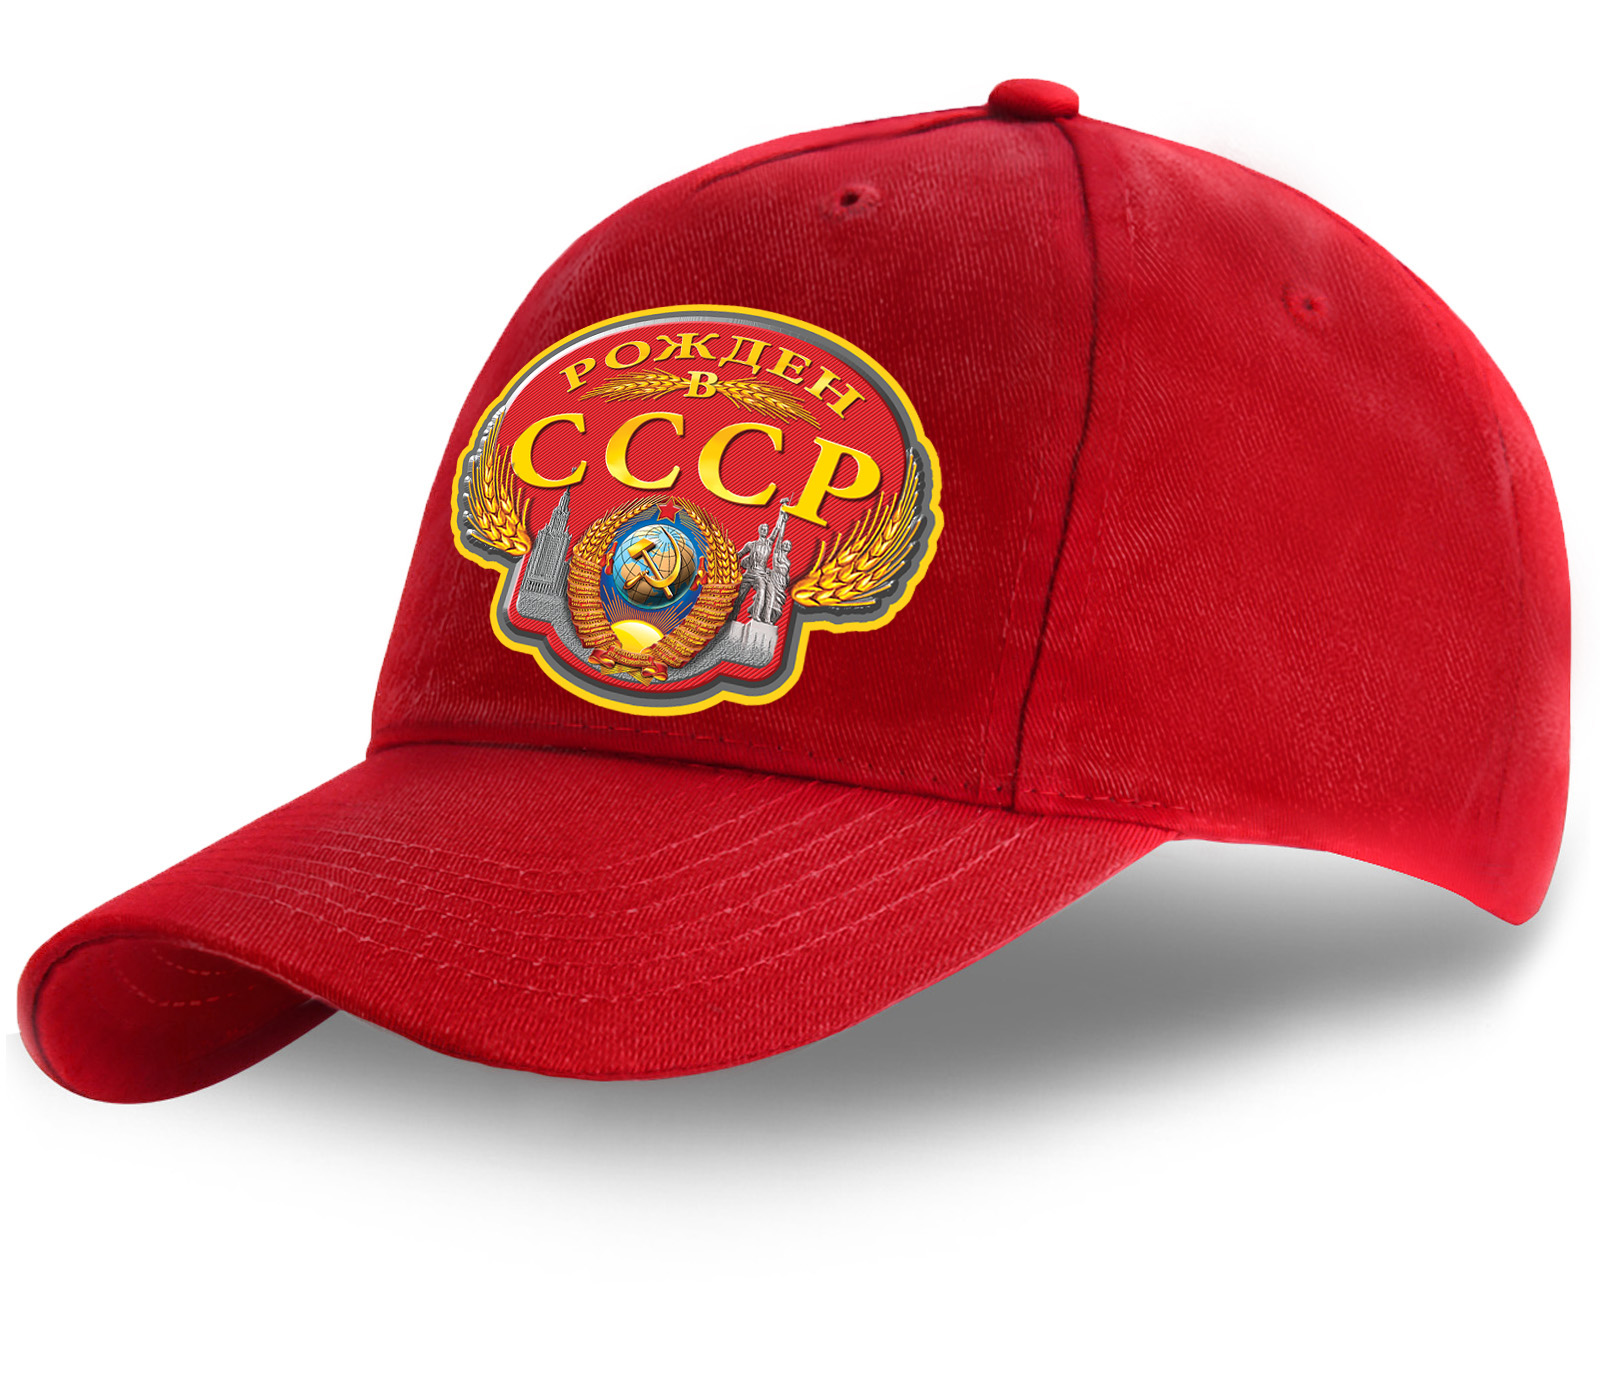 Красная сочная кепка Рожден в СССР  - ЯРКИЙ головной убор премиум-класса по специальной цене!